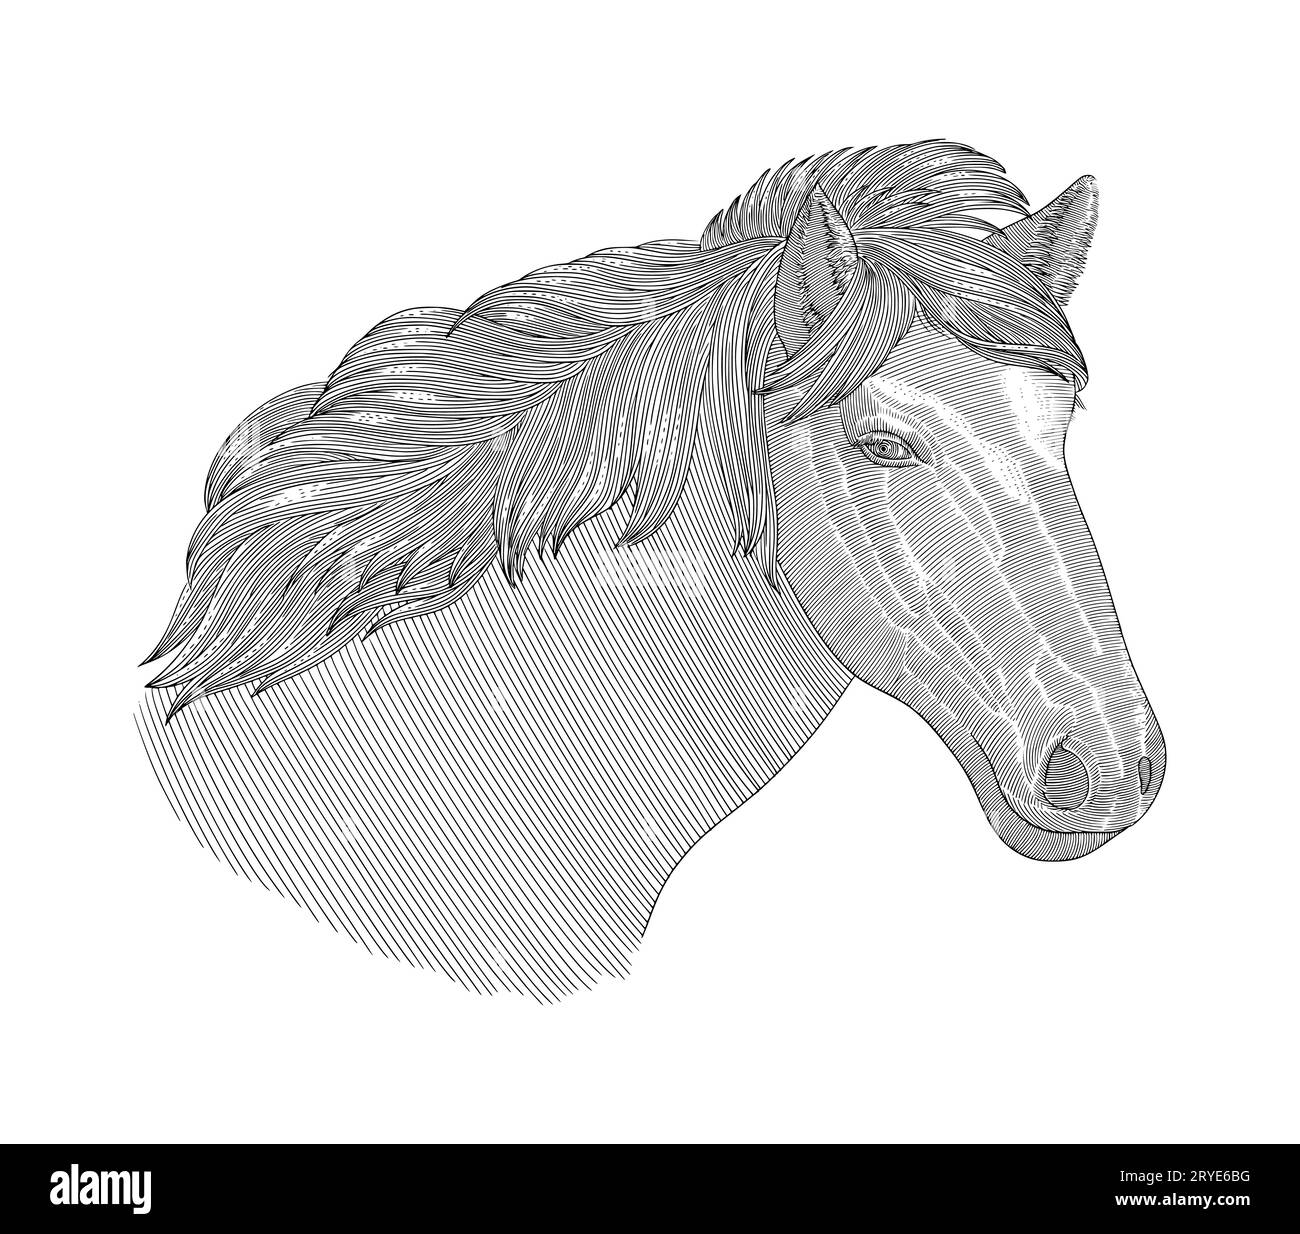 Tête de cheval, gravure Vintage illustration vectorielle de style dessin isolé sur fond blanc Illustration de Vecteur